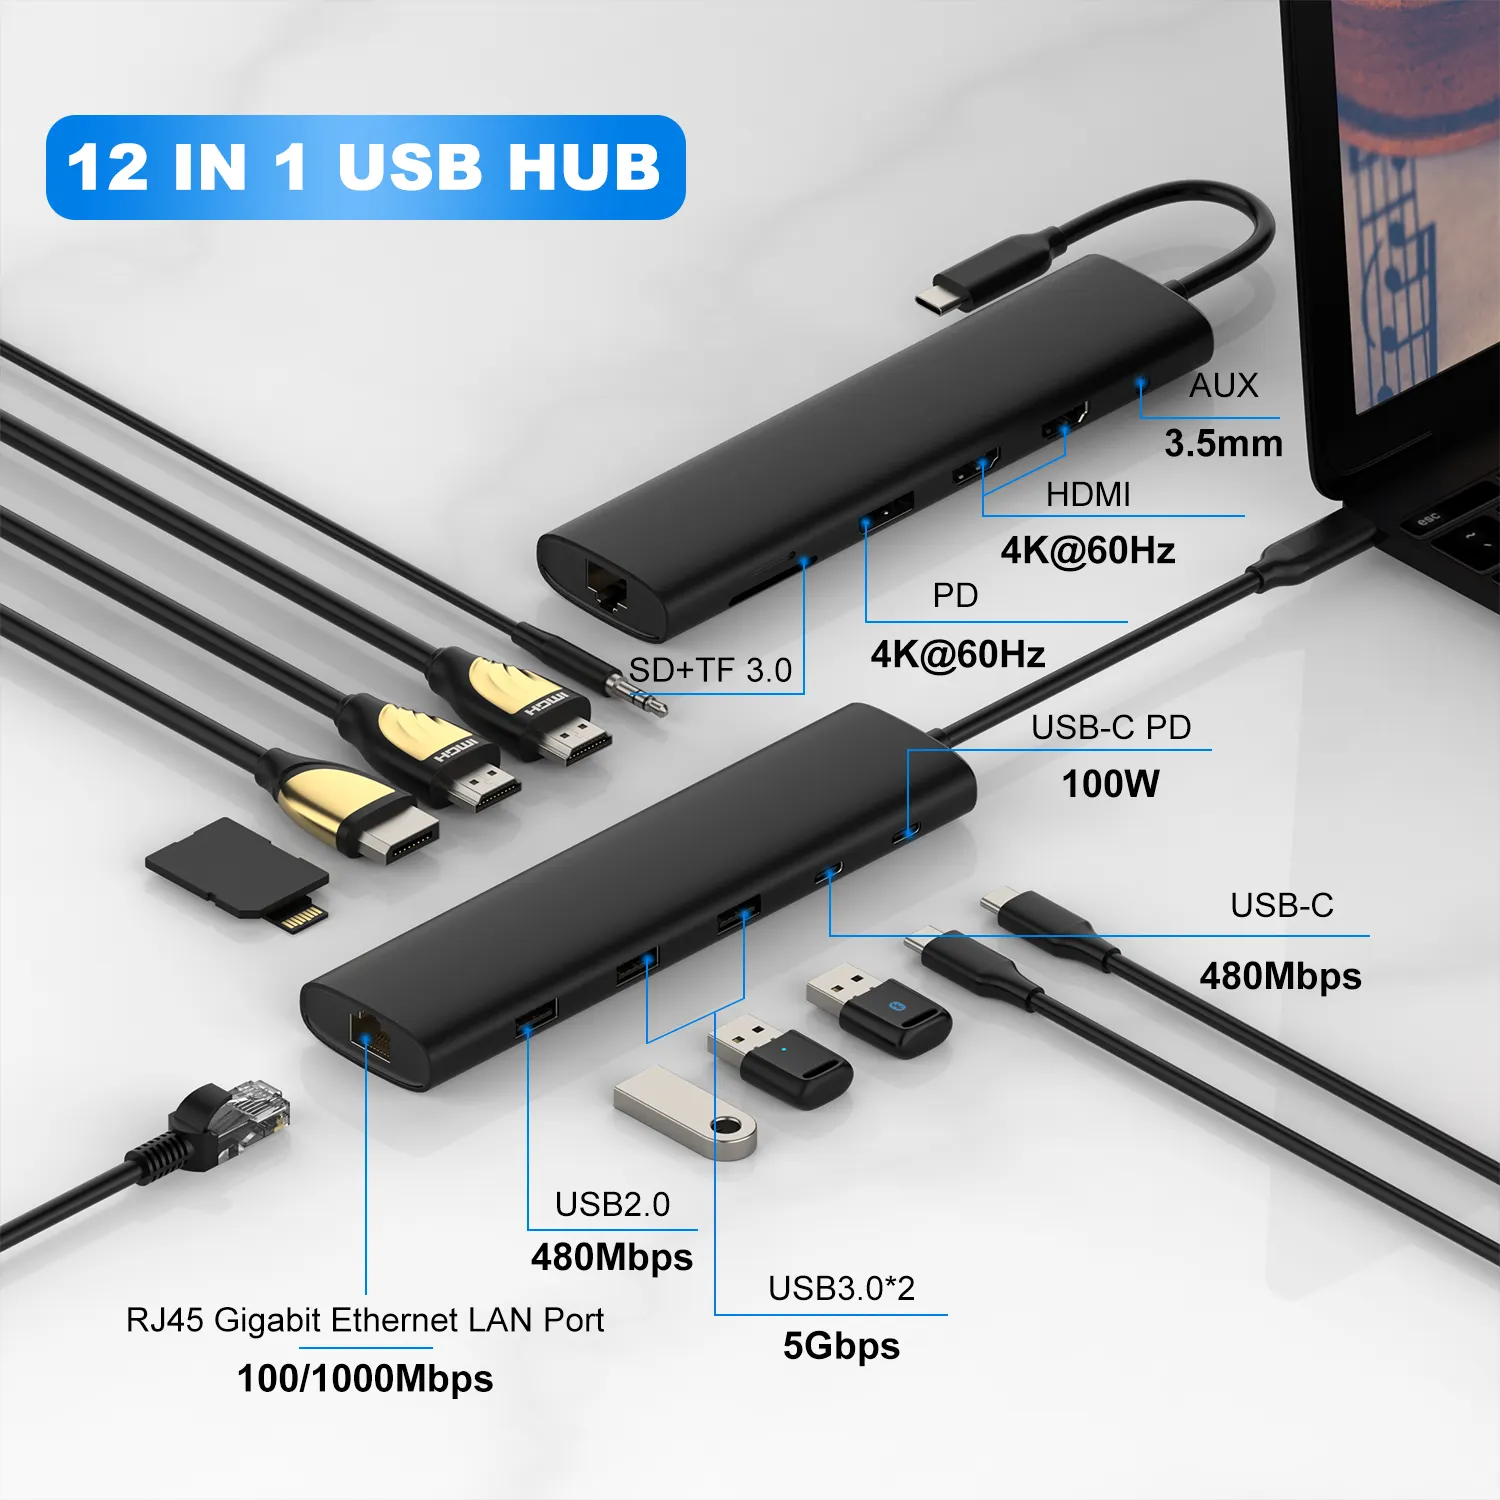 Braketi tutucu ile Laptop yerleştirme istasyonu 12 IN 1 4K HD/MI TF SD 2 USB 3.0 Laptop standı USB Macbook için HUB hızlı şarj